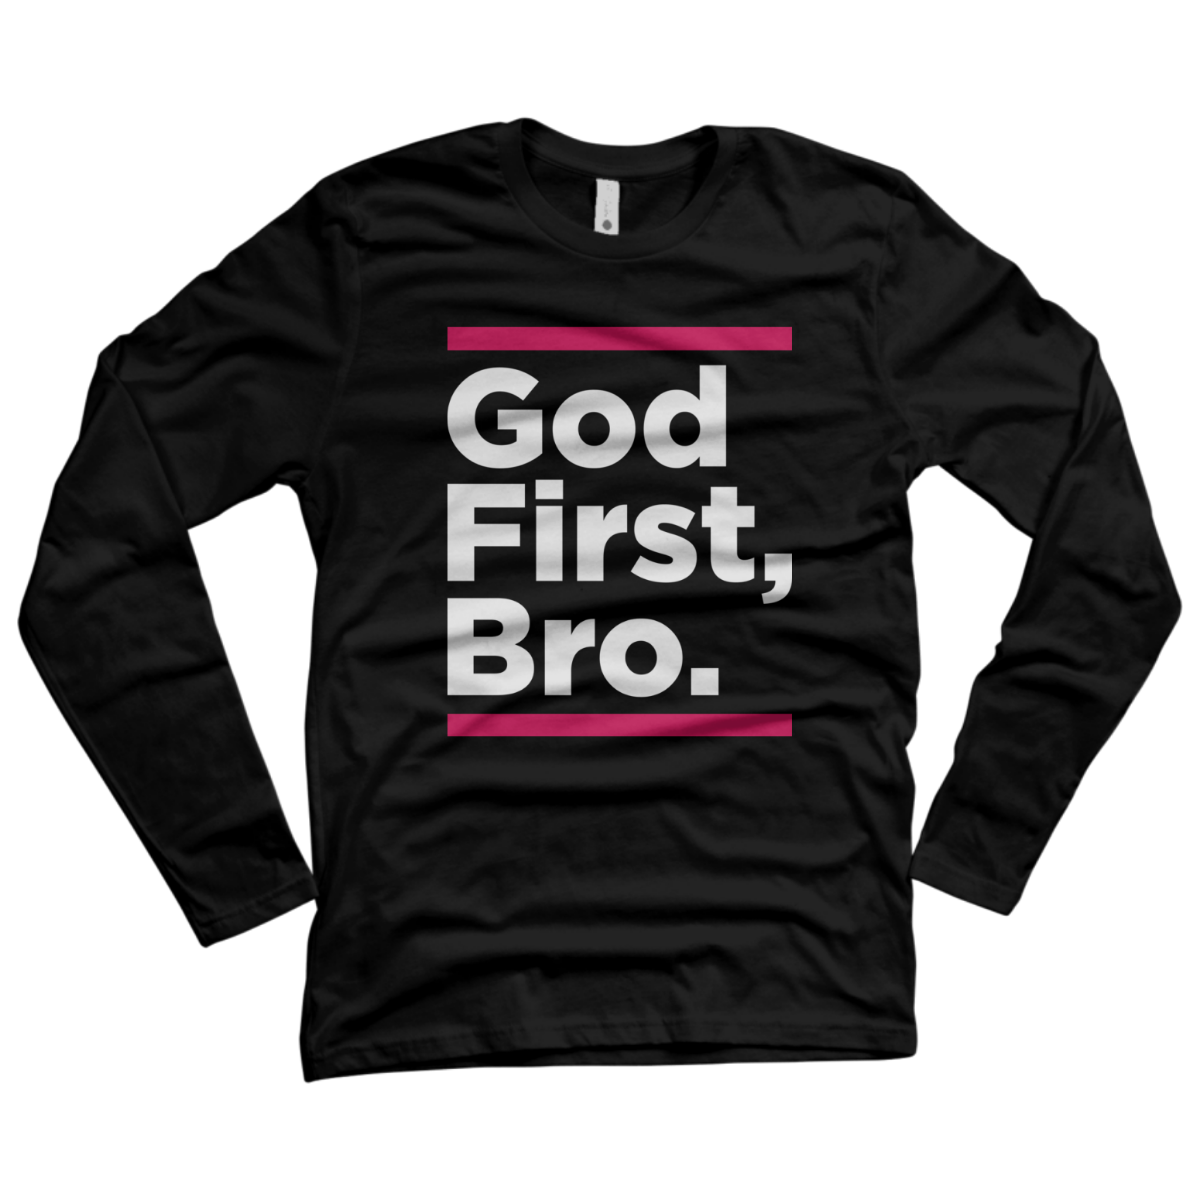 god first bro t shirt